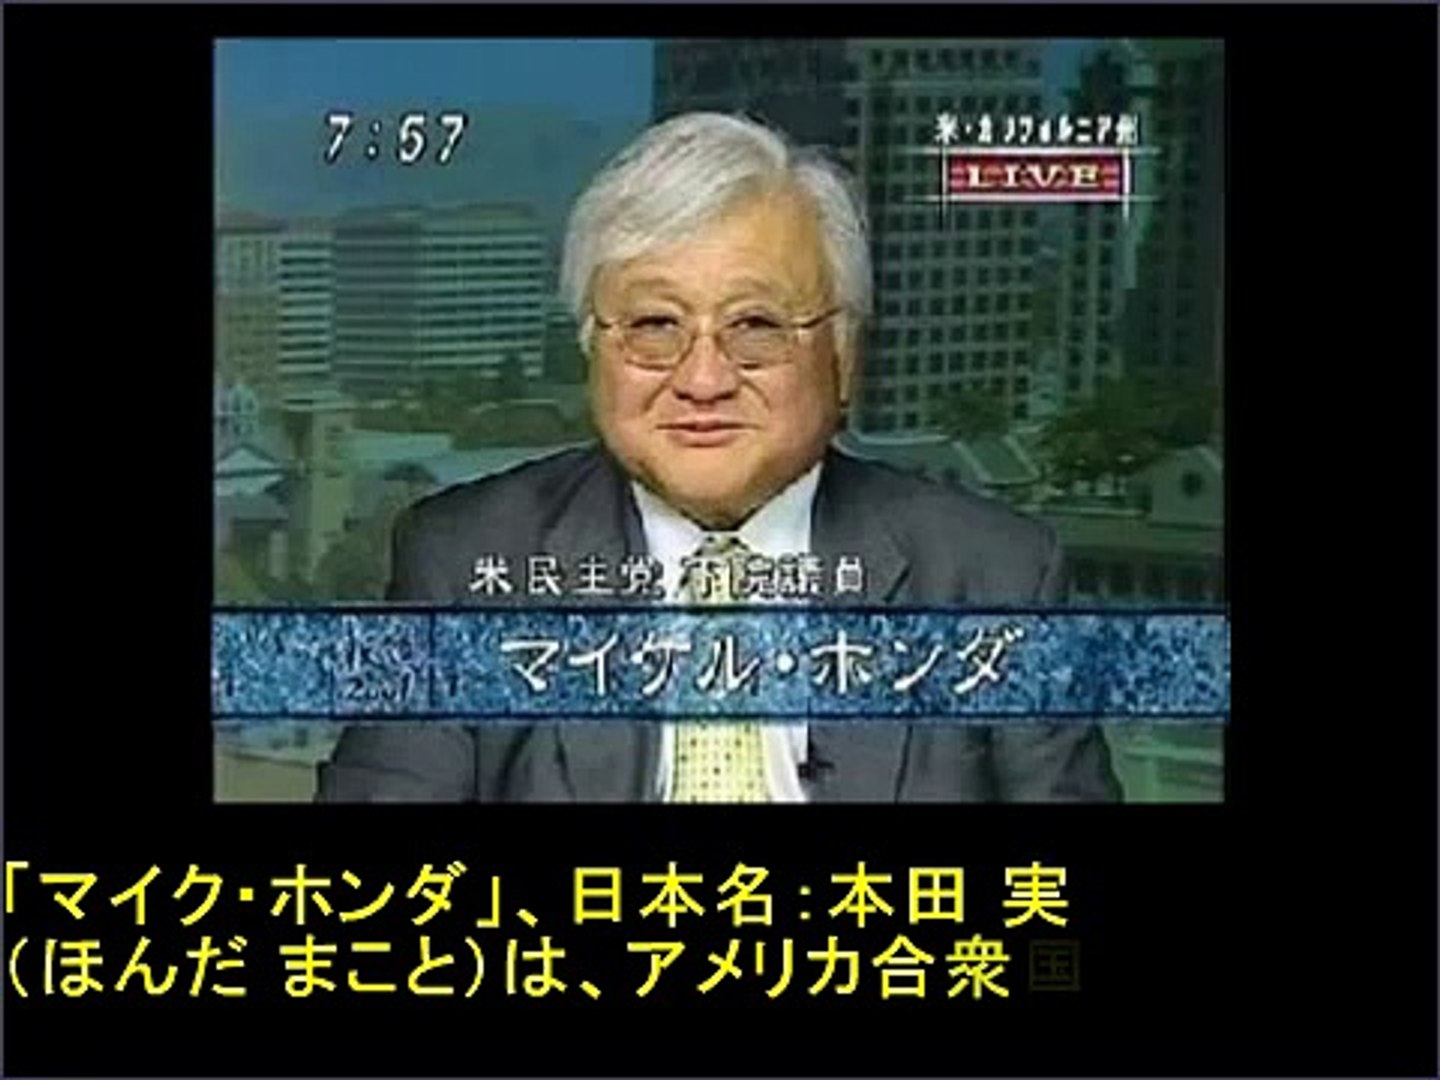 マイクホンダ議員 日本語ナレーション版 慰安婦問題を作り出す反日 偽日系 政治家 Video Dailymotion